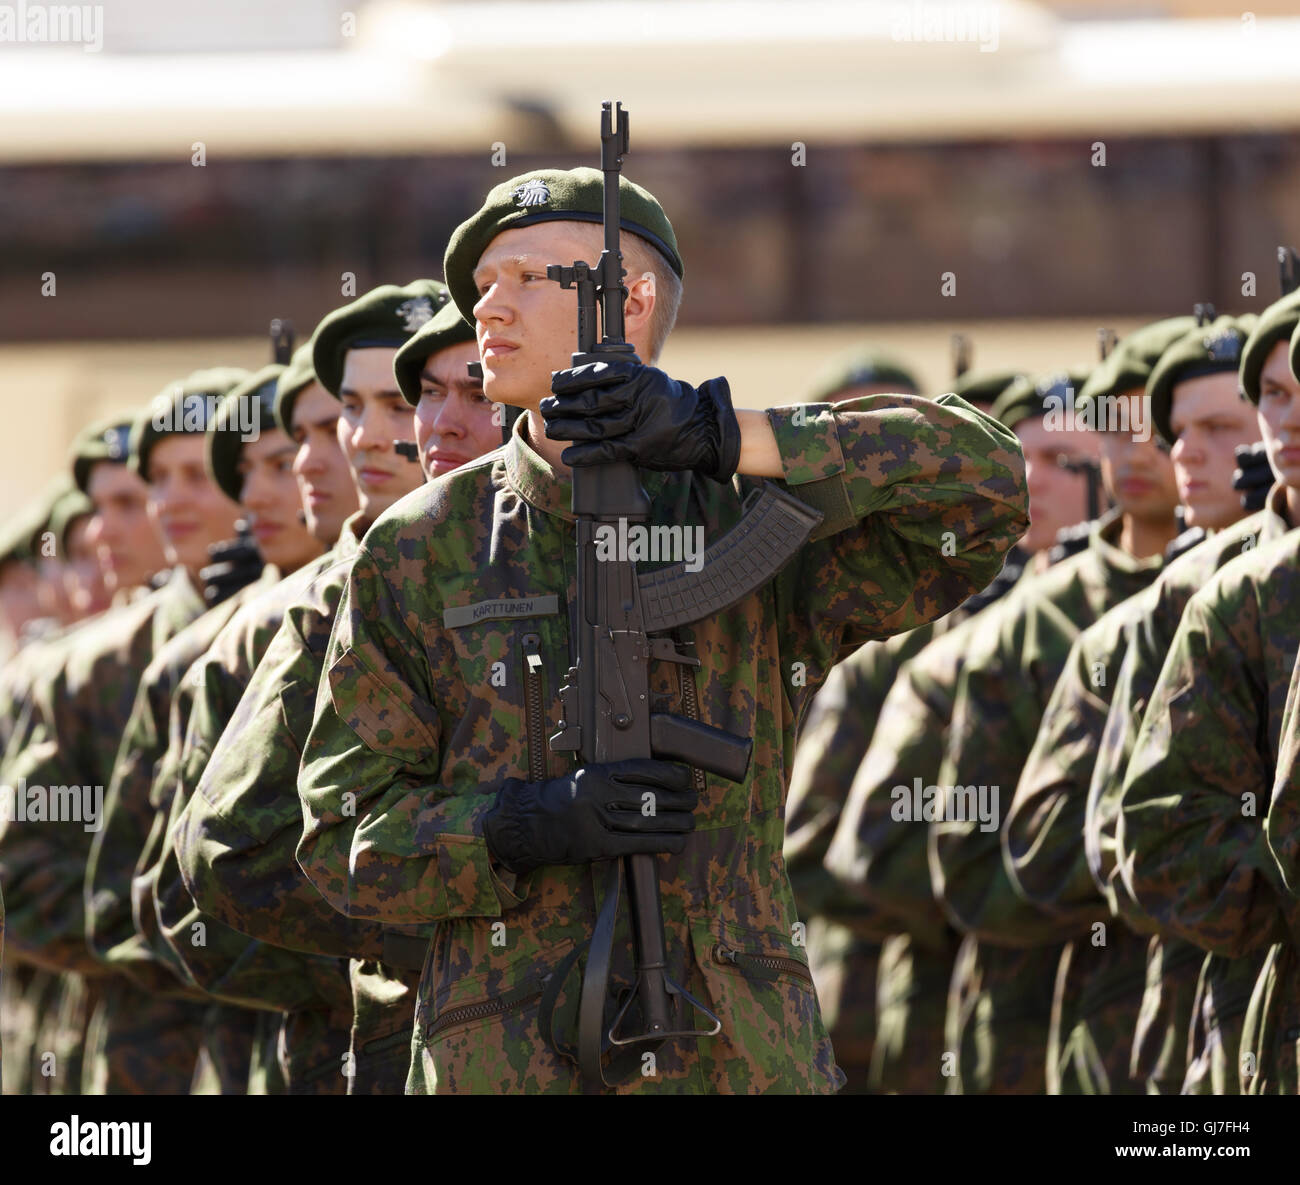 Conscrits de la Guards Régiment Jaeger sur le point de donner en public leur serment militaire pour servir loyalement la Finlande en tout temps. Banque D'Images